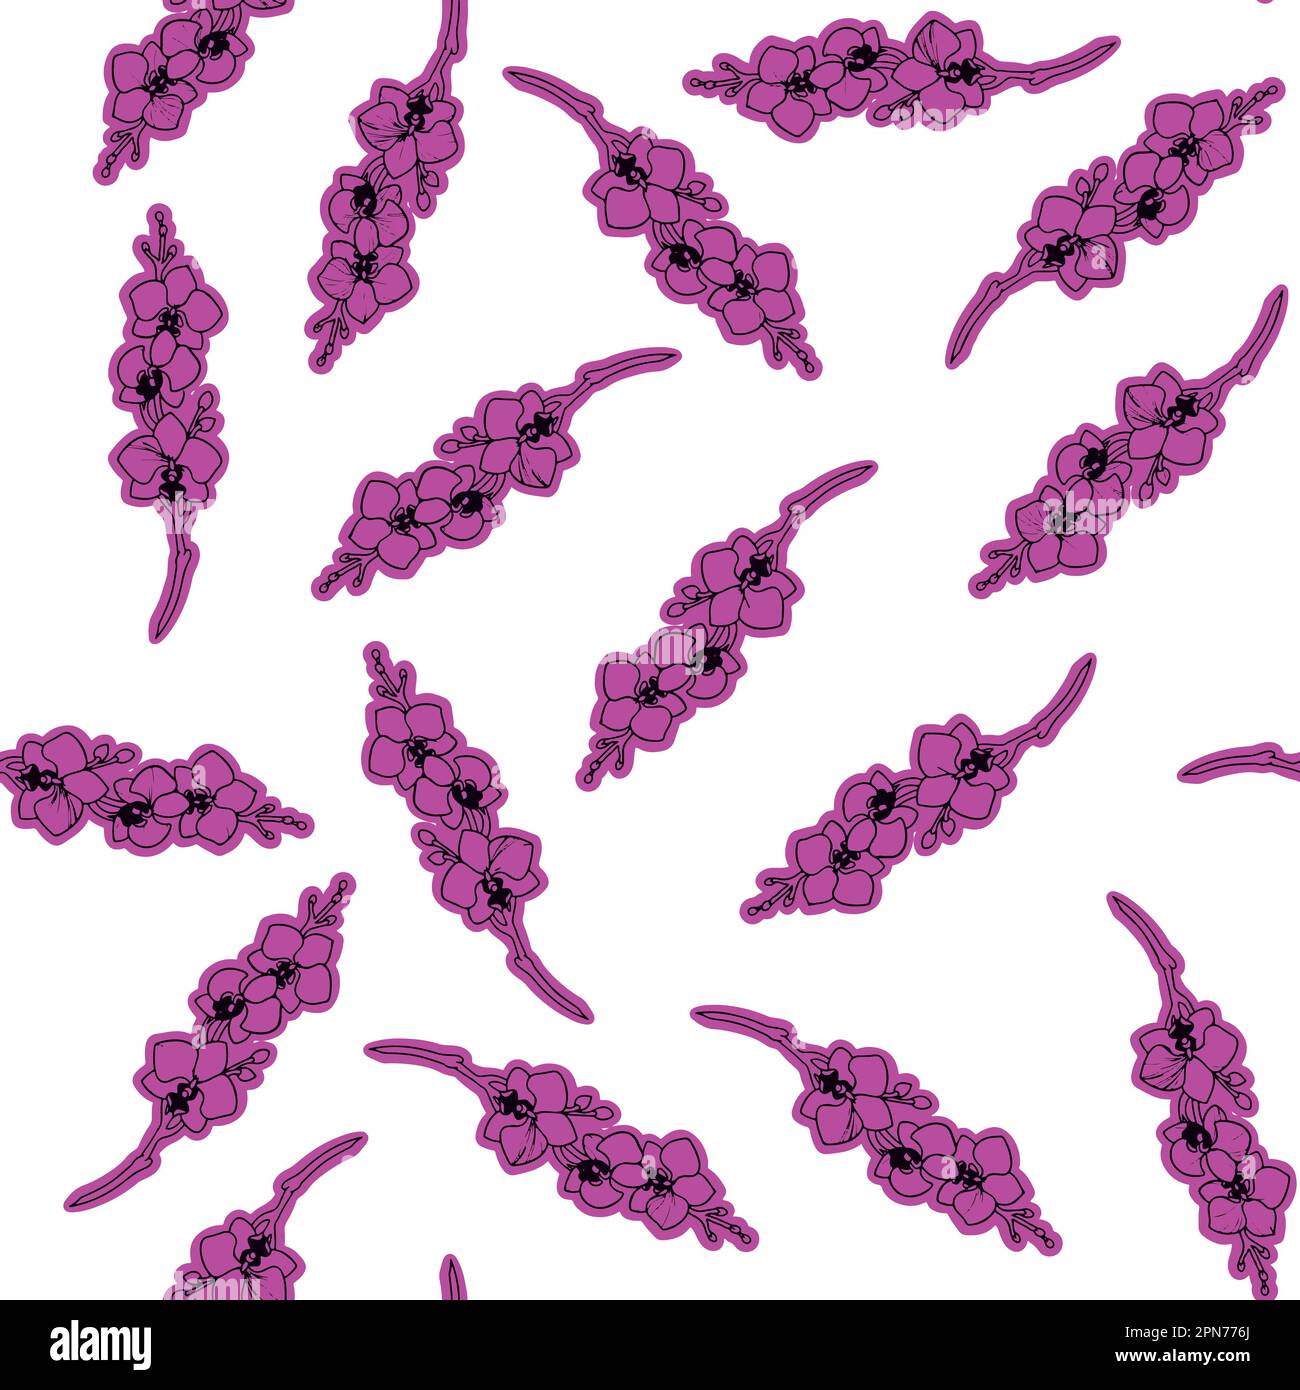 Motif vectoriel de fleurs d'orchidée rose. Il s'agit d'une illustration polyvalente conçue pour plusieurs cas d'utilisation. Utilisable pour les produits textiles ou de papeterie. Illustration de Vecteur